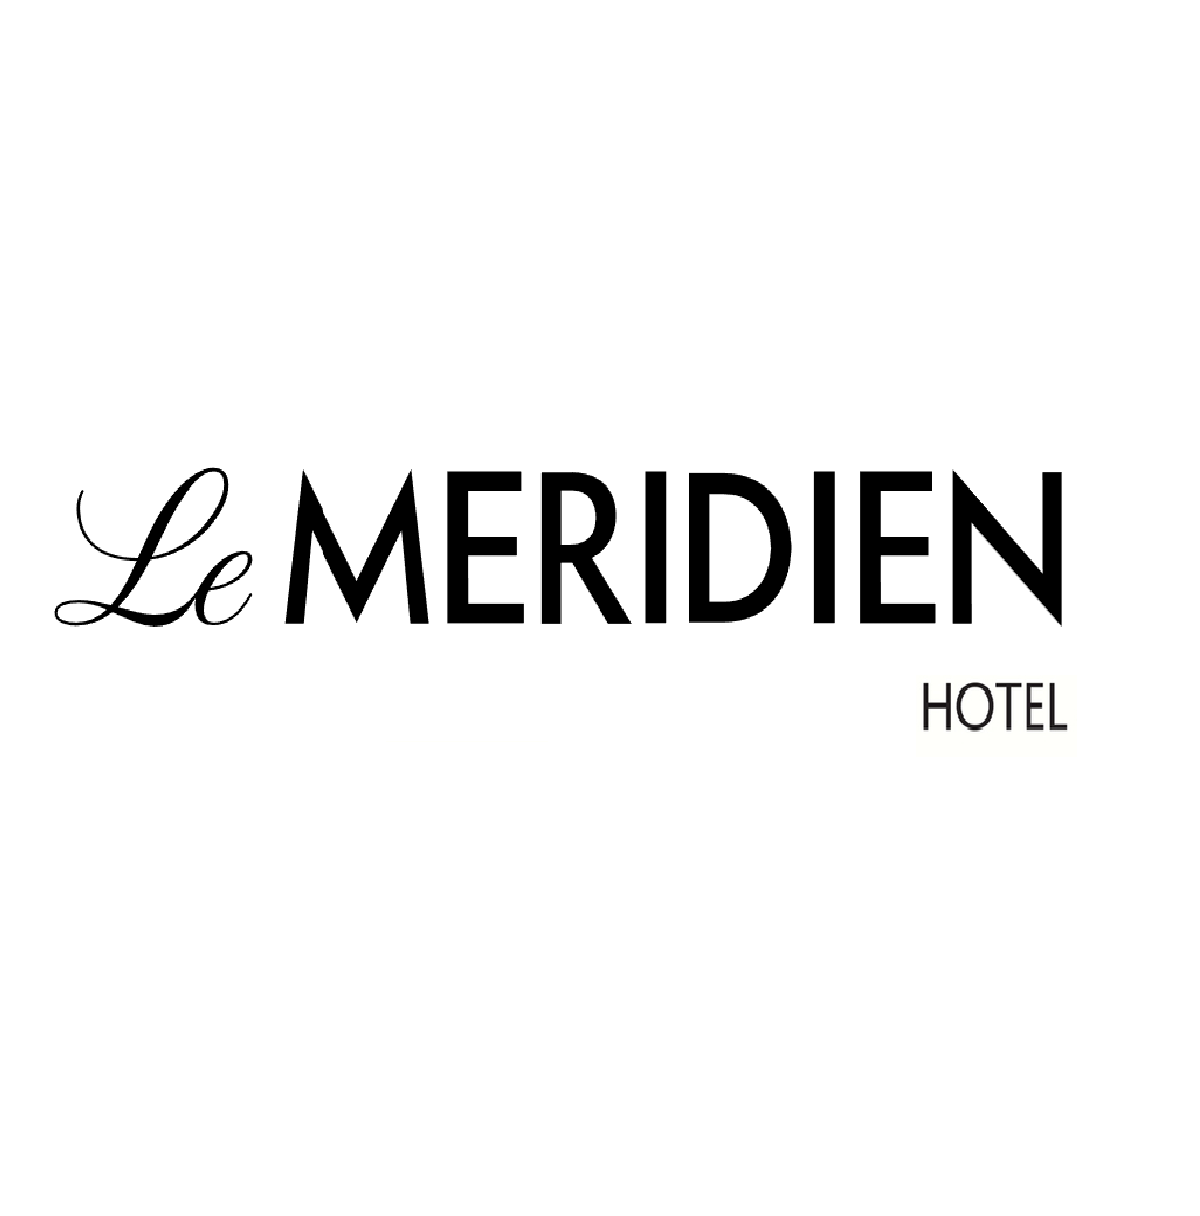 Le Meridien Hotel